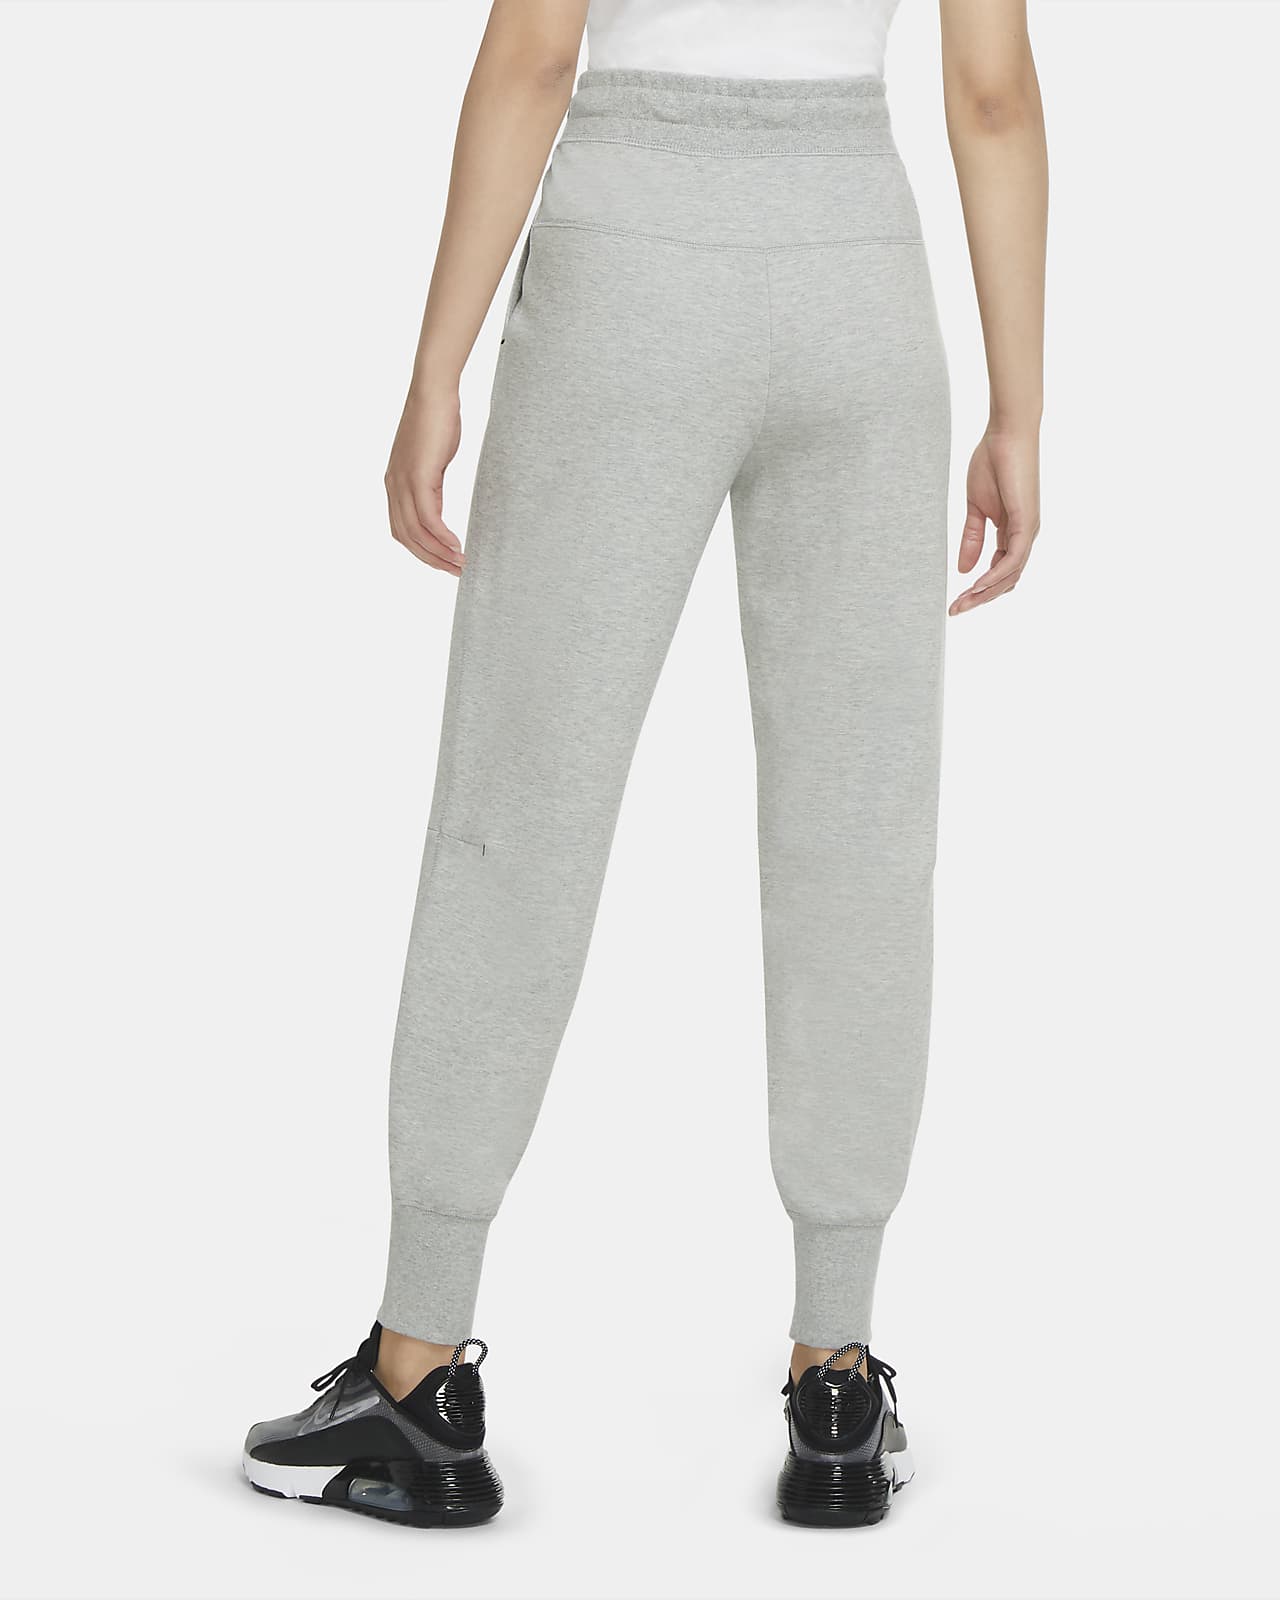 women's trousers nike sportswear tech fleece